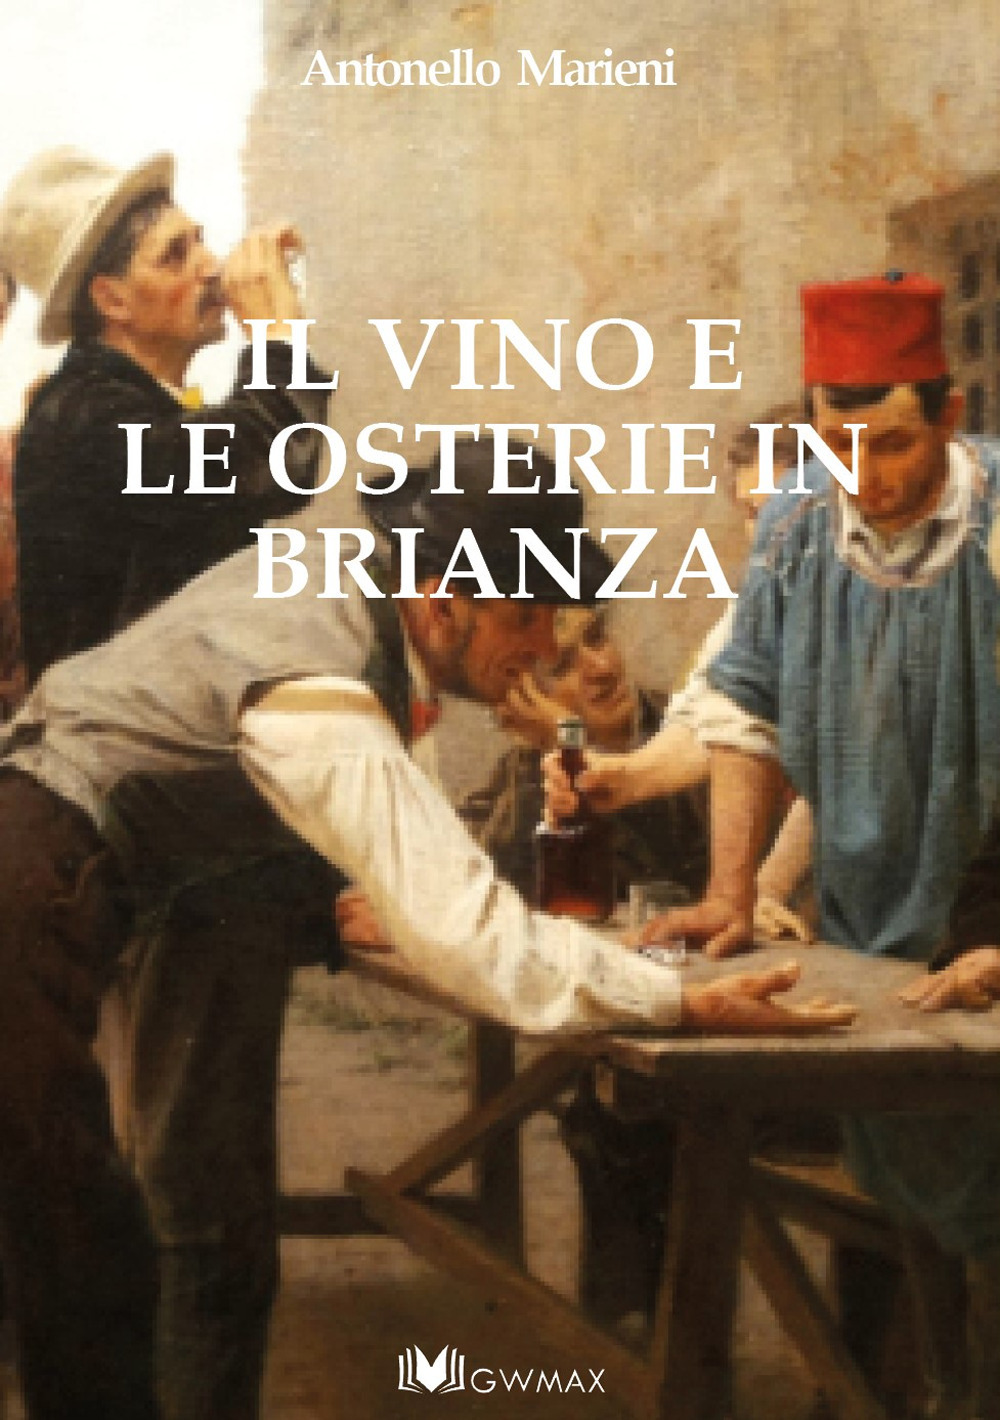 Libri Antonello Marieni - Il Vino E Le Osterie In Brianza NUOVO SIGILLATO, EDIZIONE DEL 01/12/2019 SUBITO DISPONIBILE